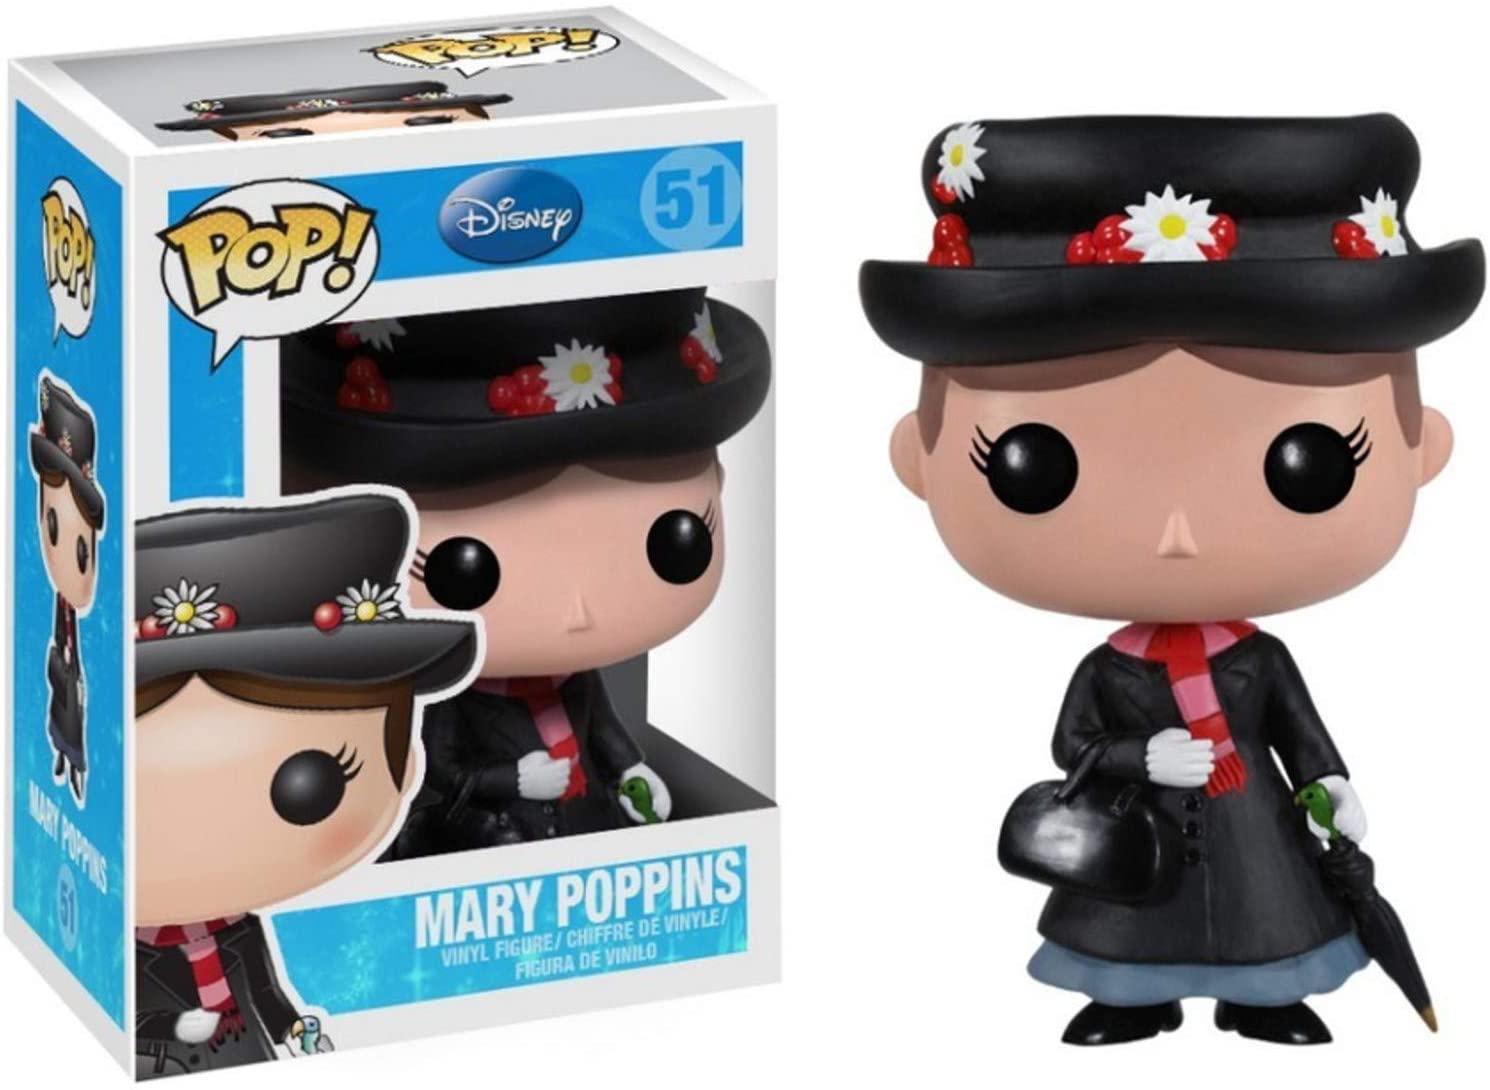 Funko Pop Mary Poppins 51 - Mary Poppins Disney